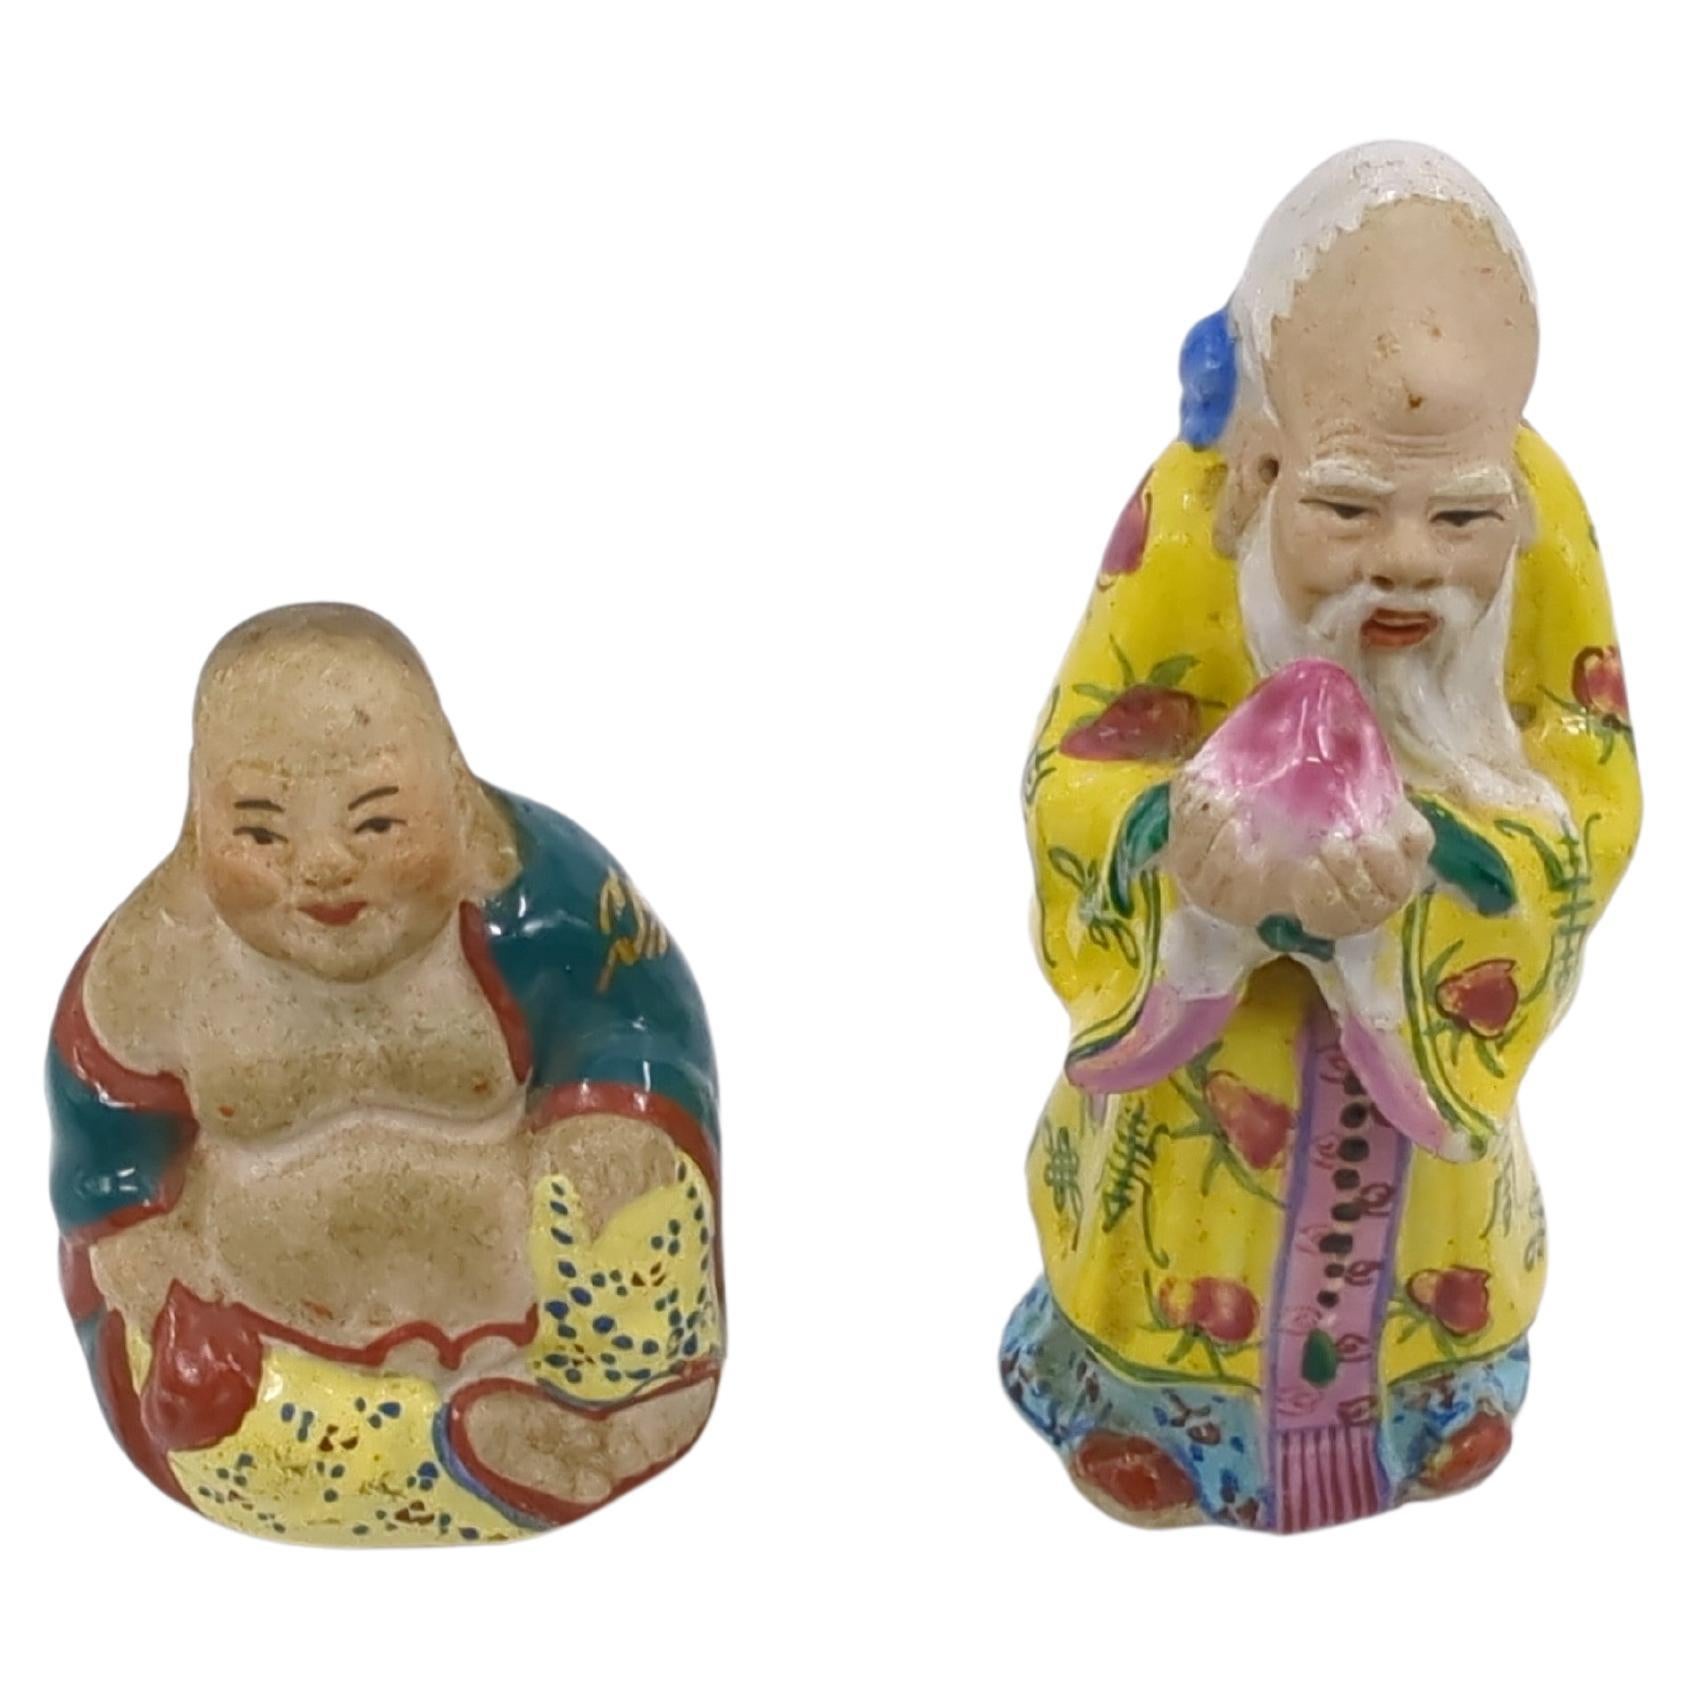 Zwei kleine chinesische Famille-Rose-Porzellanfiguren (1) eines sitzenden Budai (oder Hotai) Buddhas und (2) eines stehenden Gottes der Langlebigkeit, der einen großen Pfirsich präsentiert

Größe H: 3,25